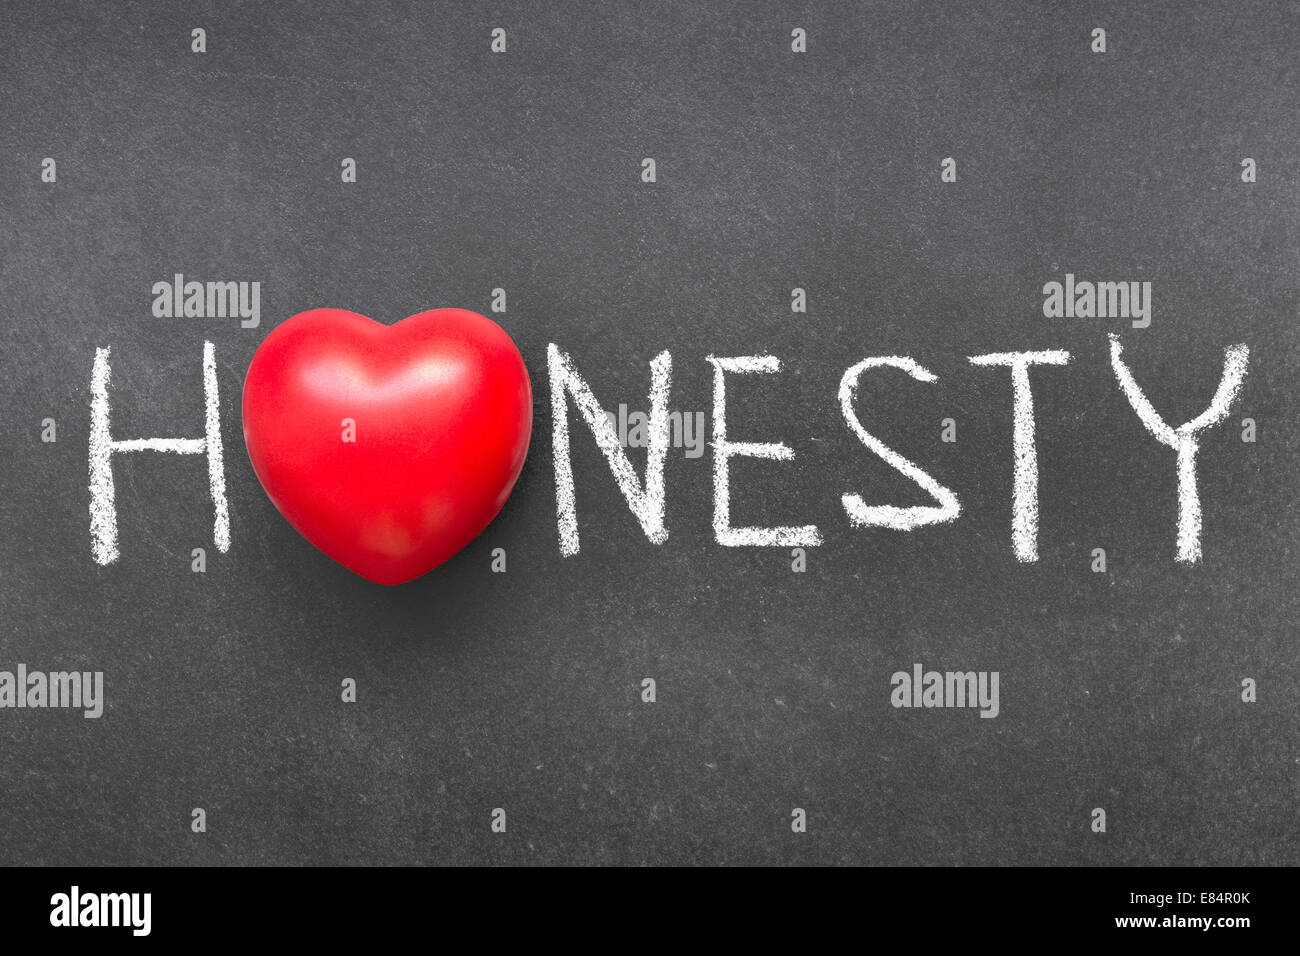 Ehrlichkeit-Wort handschriftlich auf Tafel mit Herzsymbol statt O Stockfoto